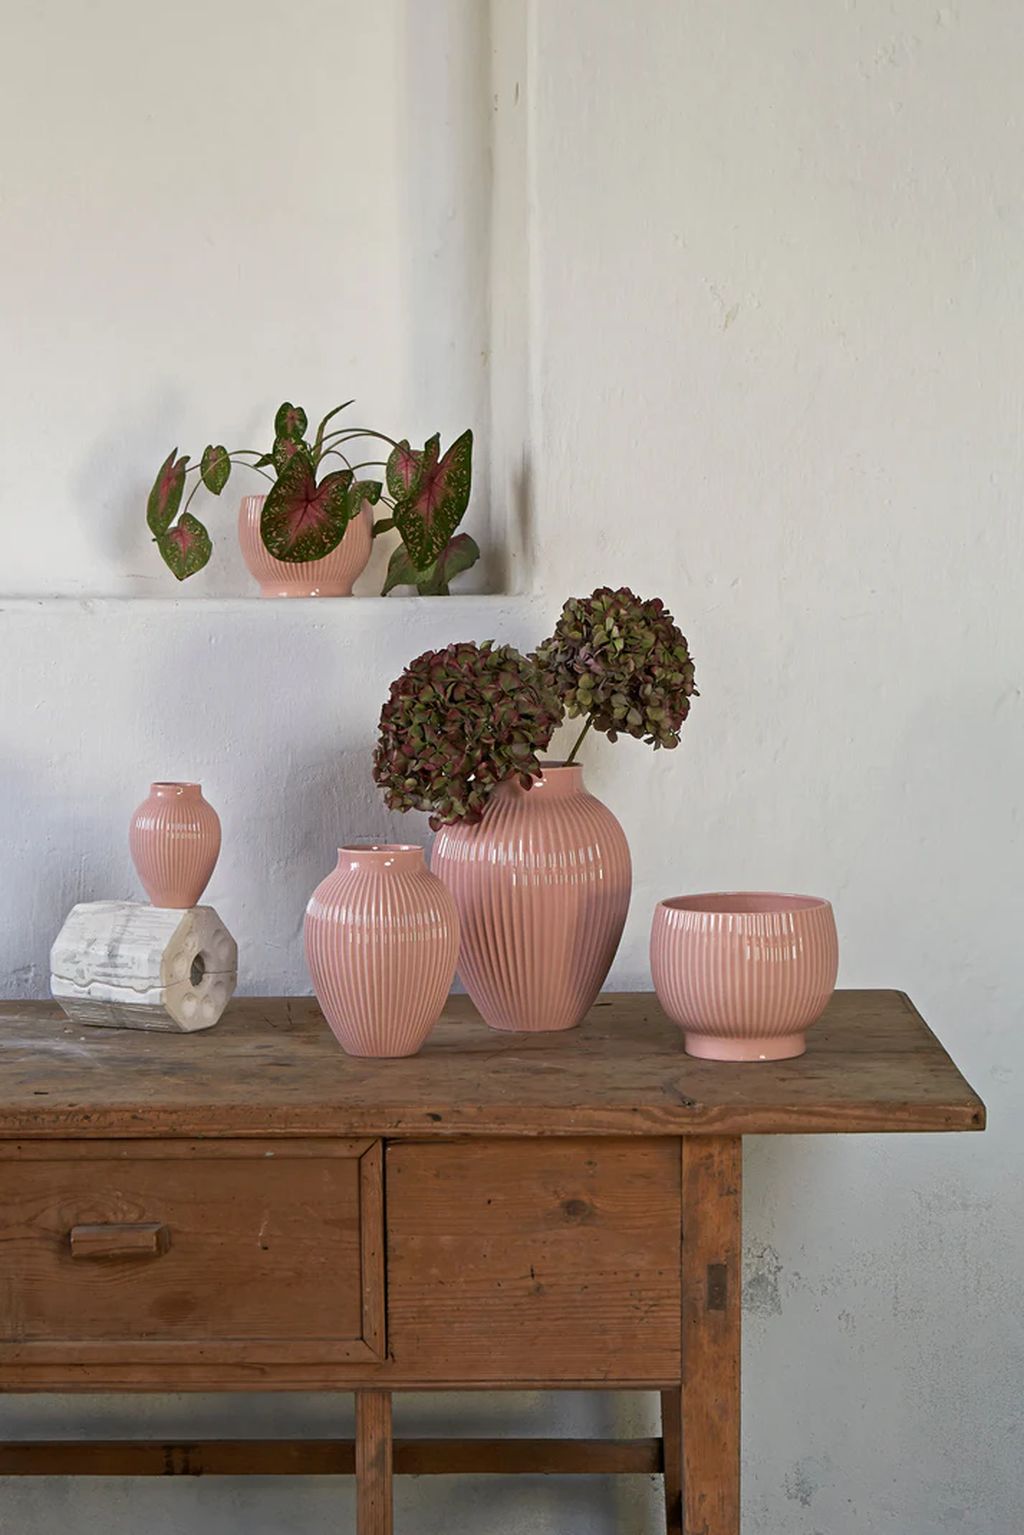 Knabstrup Keramik Flowerpot met wielen Ø 14,5 cm, roze